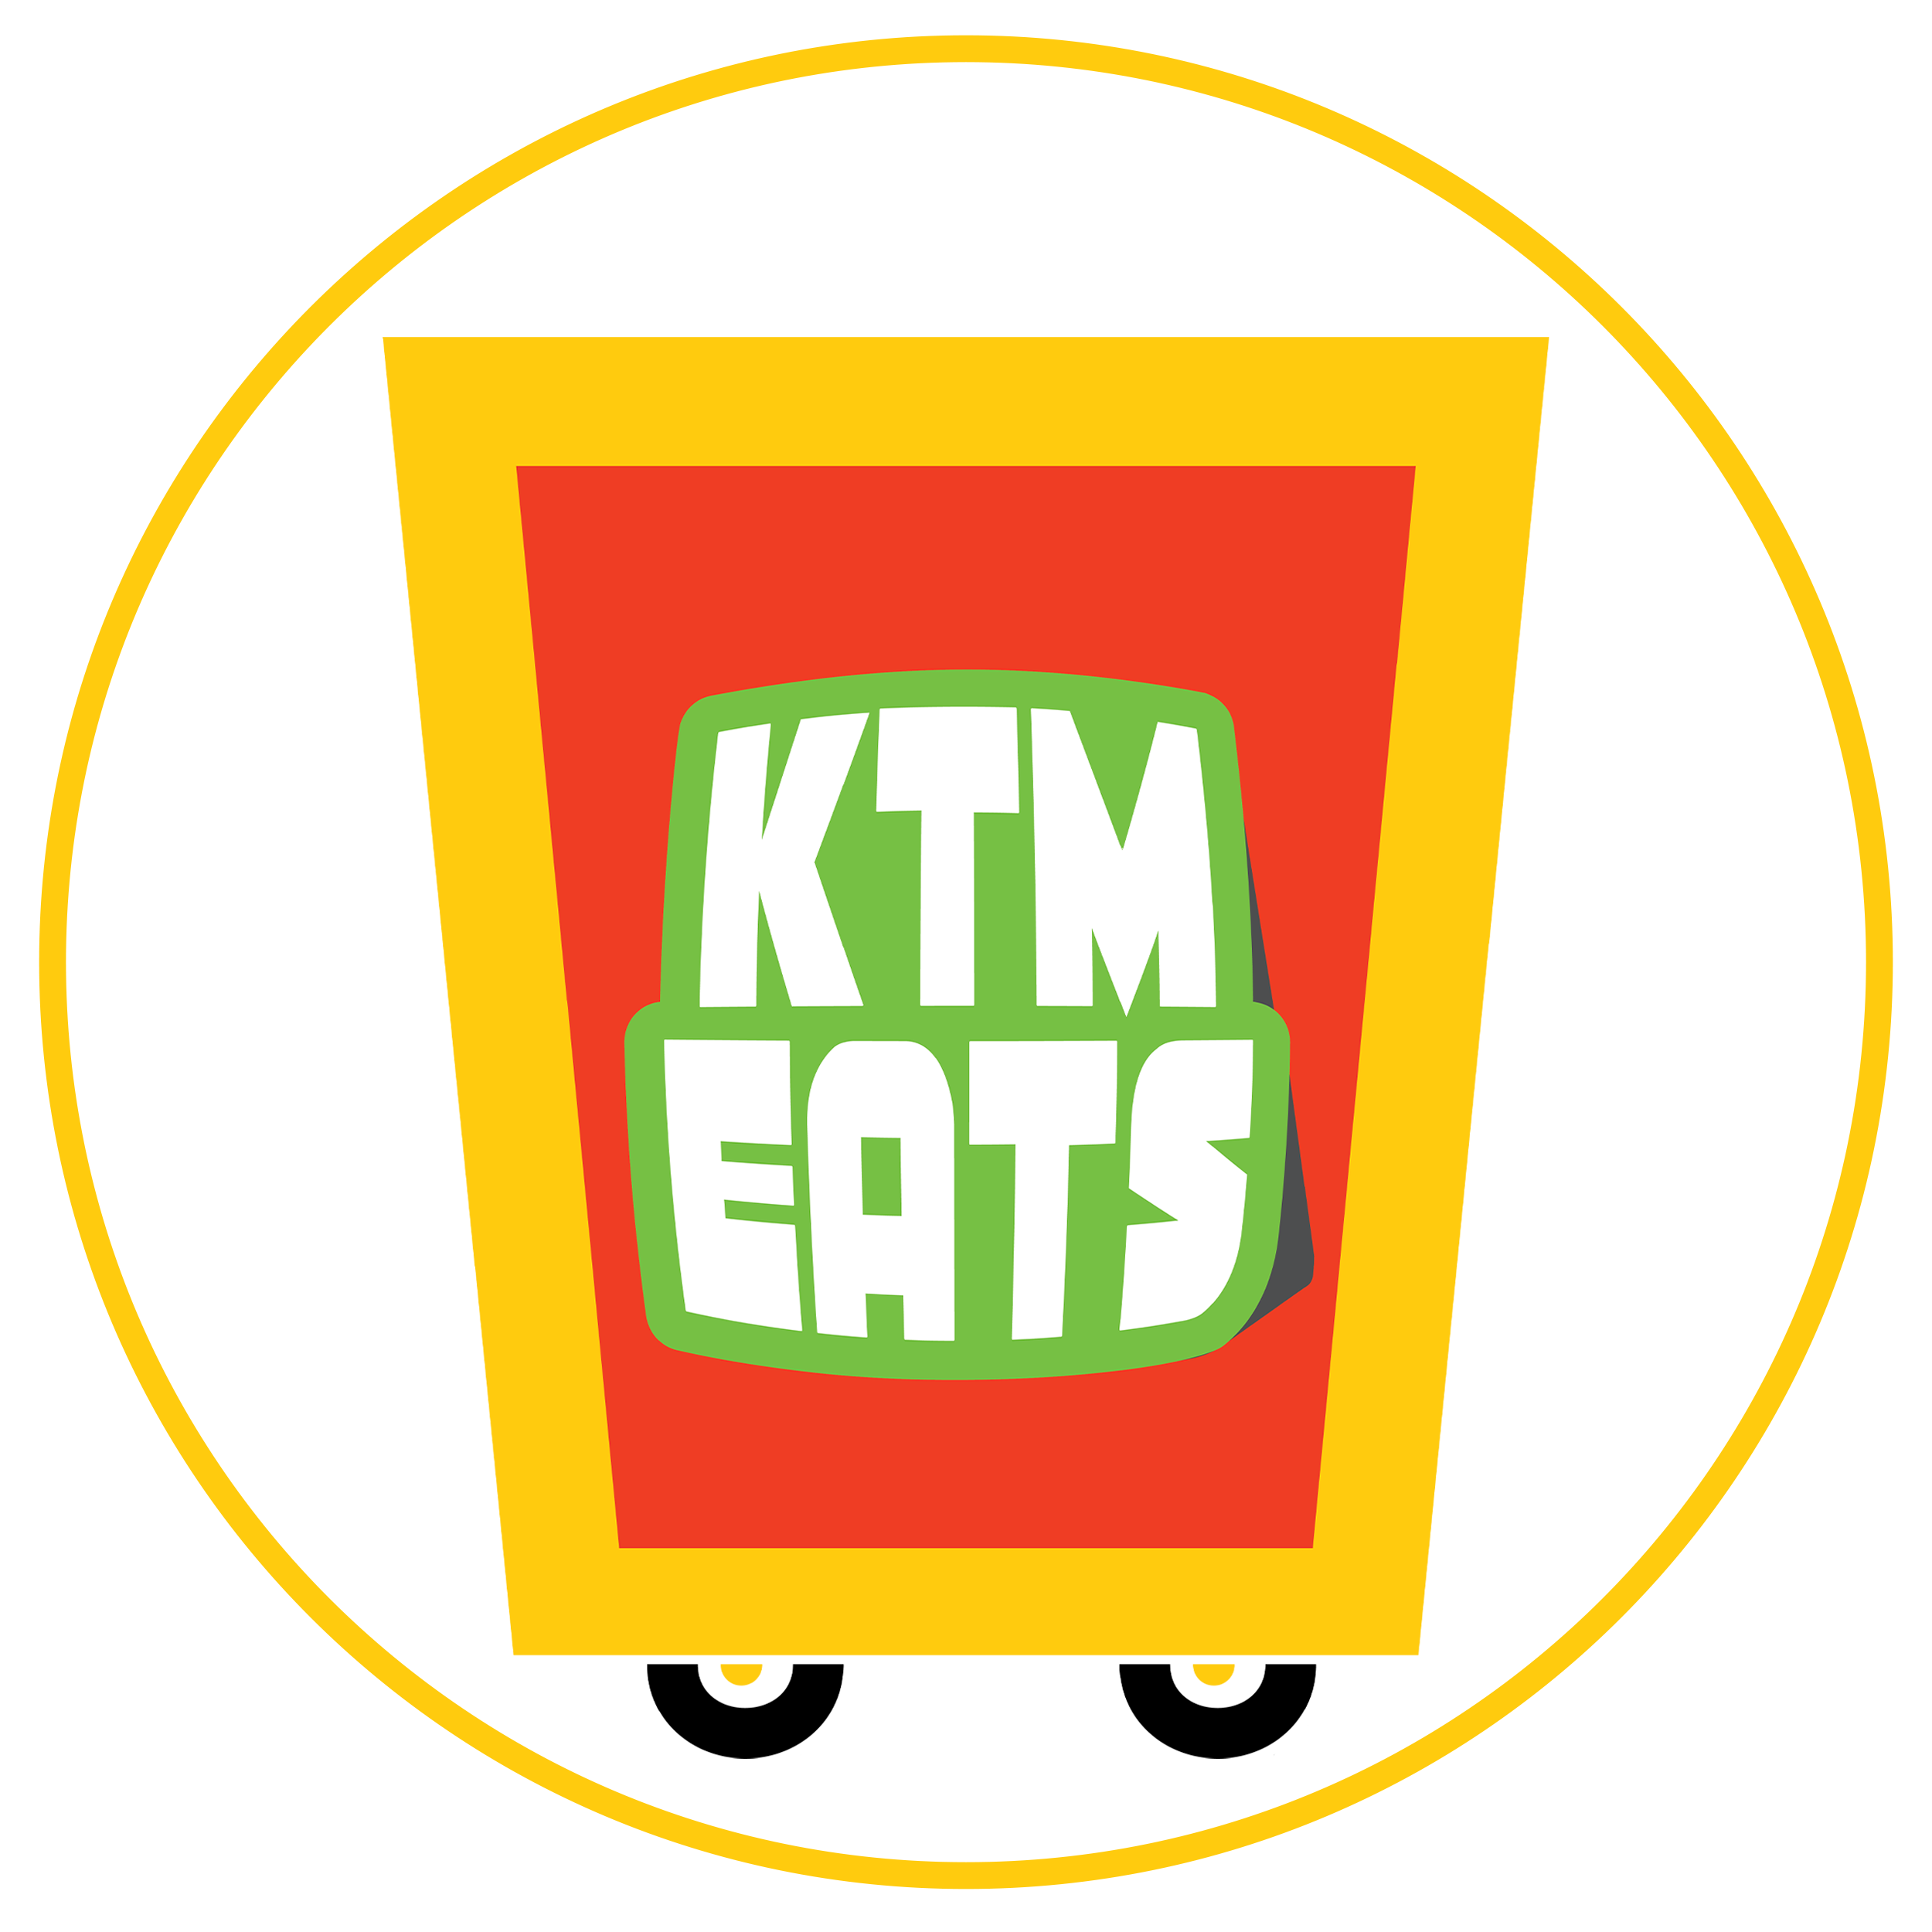 KTM Eats